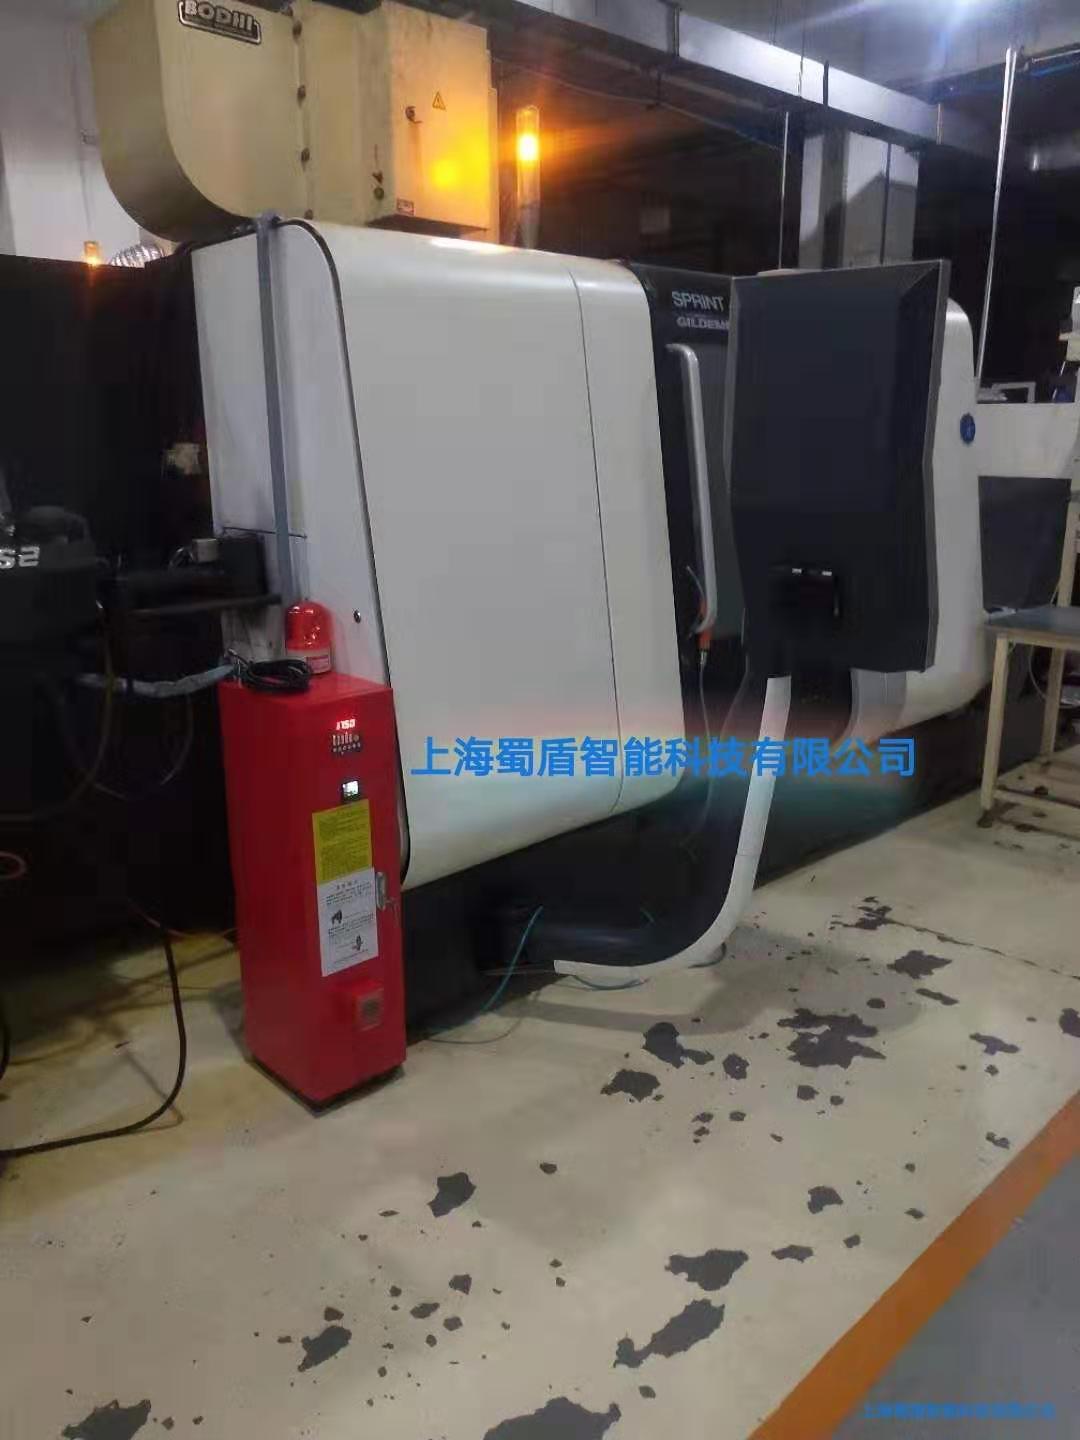 加工中心机床专用灭火装置——上海蜀盾